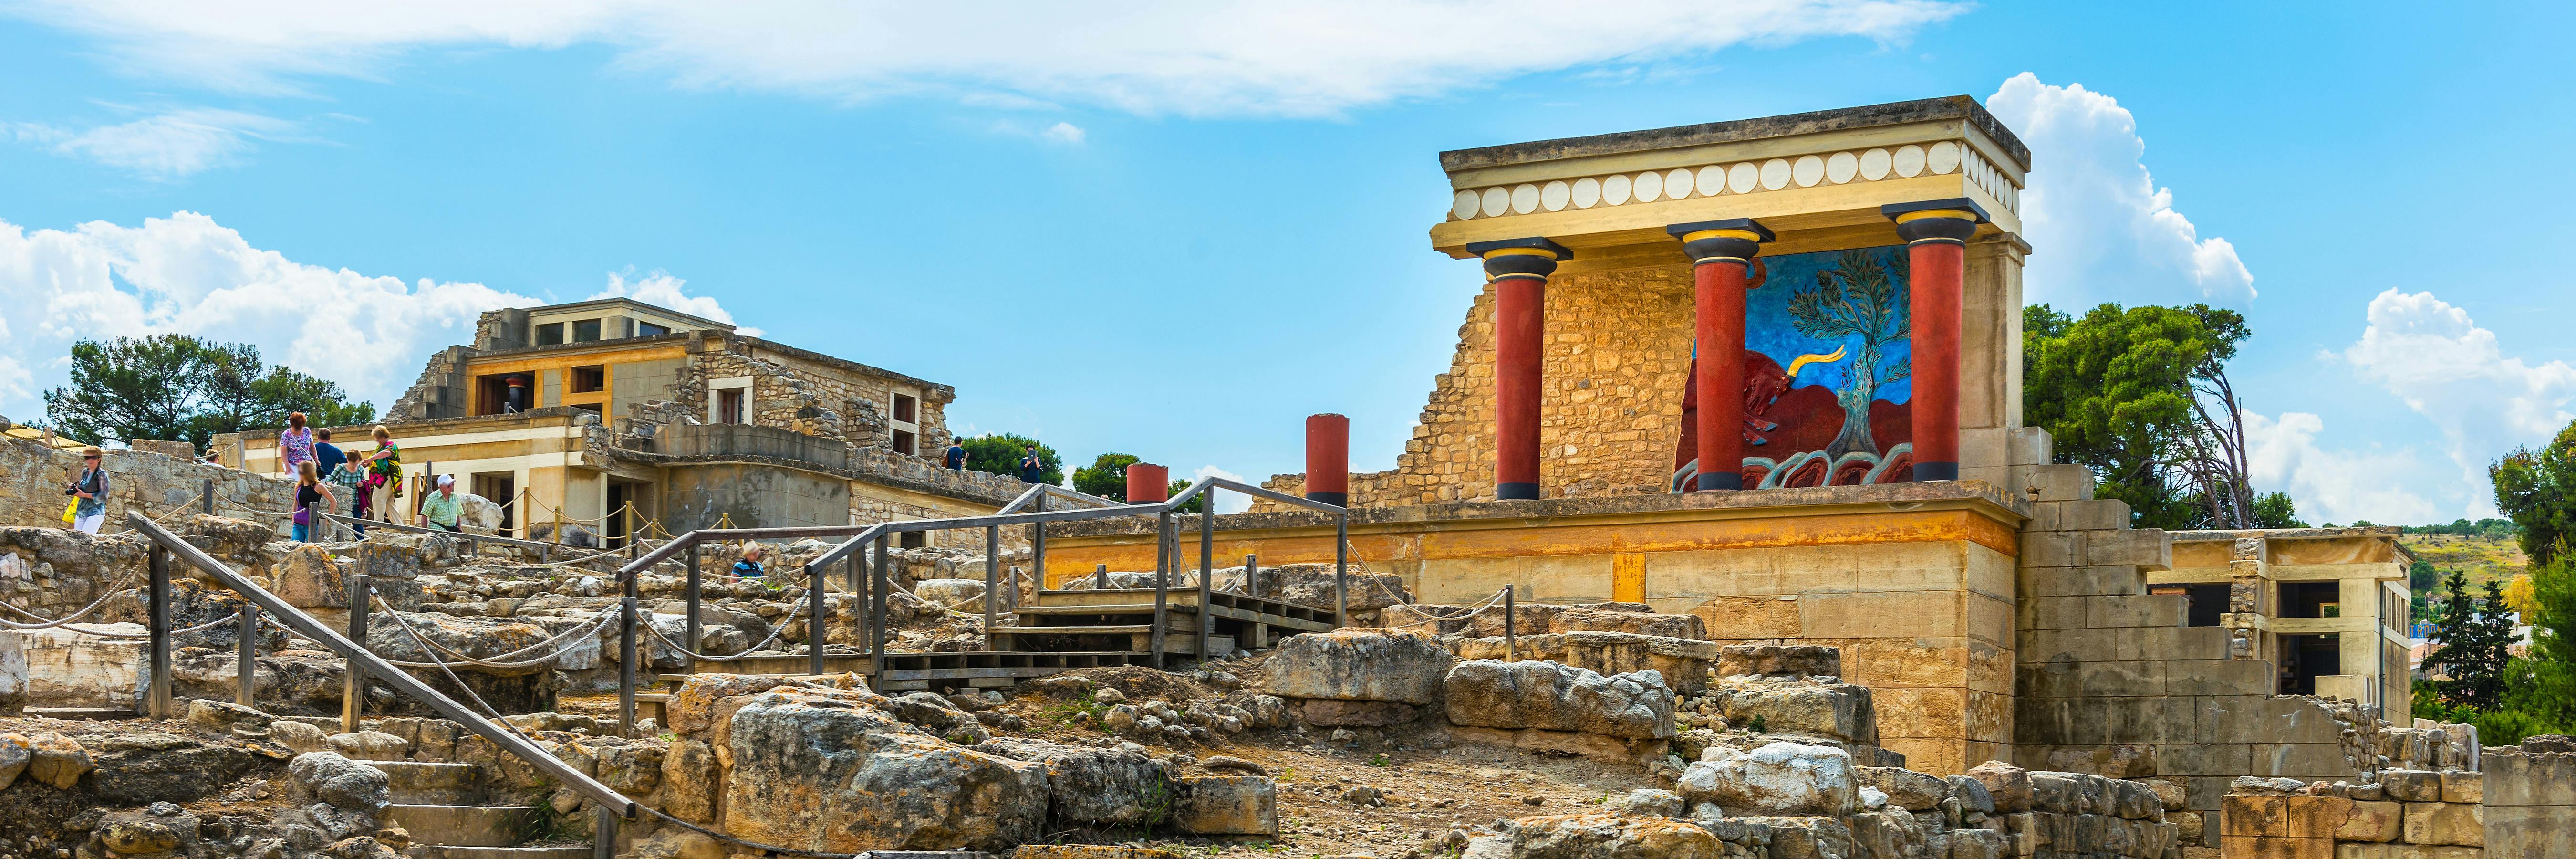 Visita al Palacio de Knossos y al Museo Arqueológico con transporte desde Heraklion